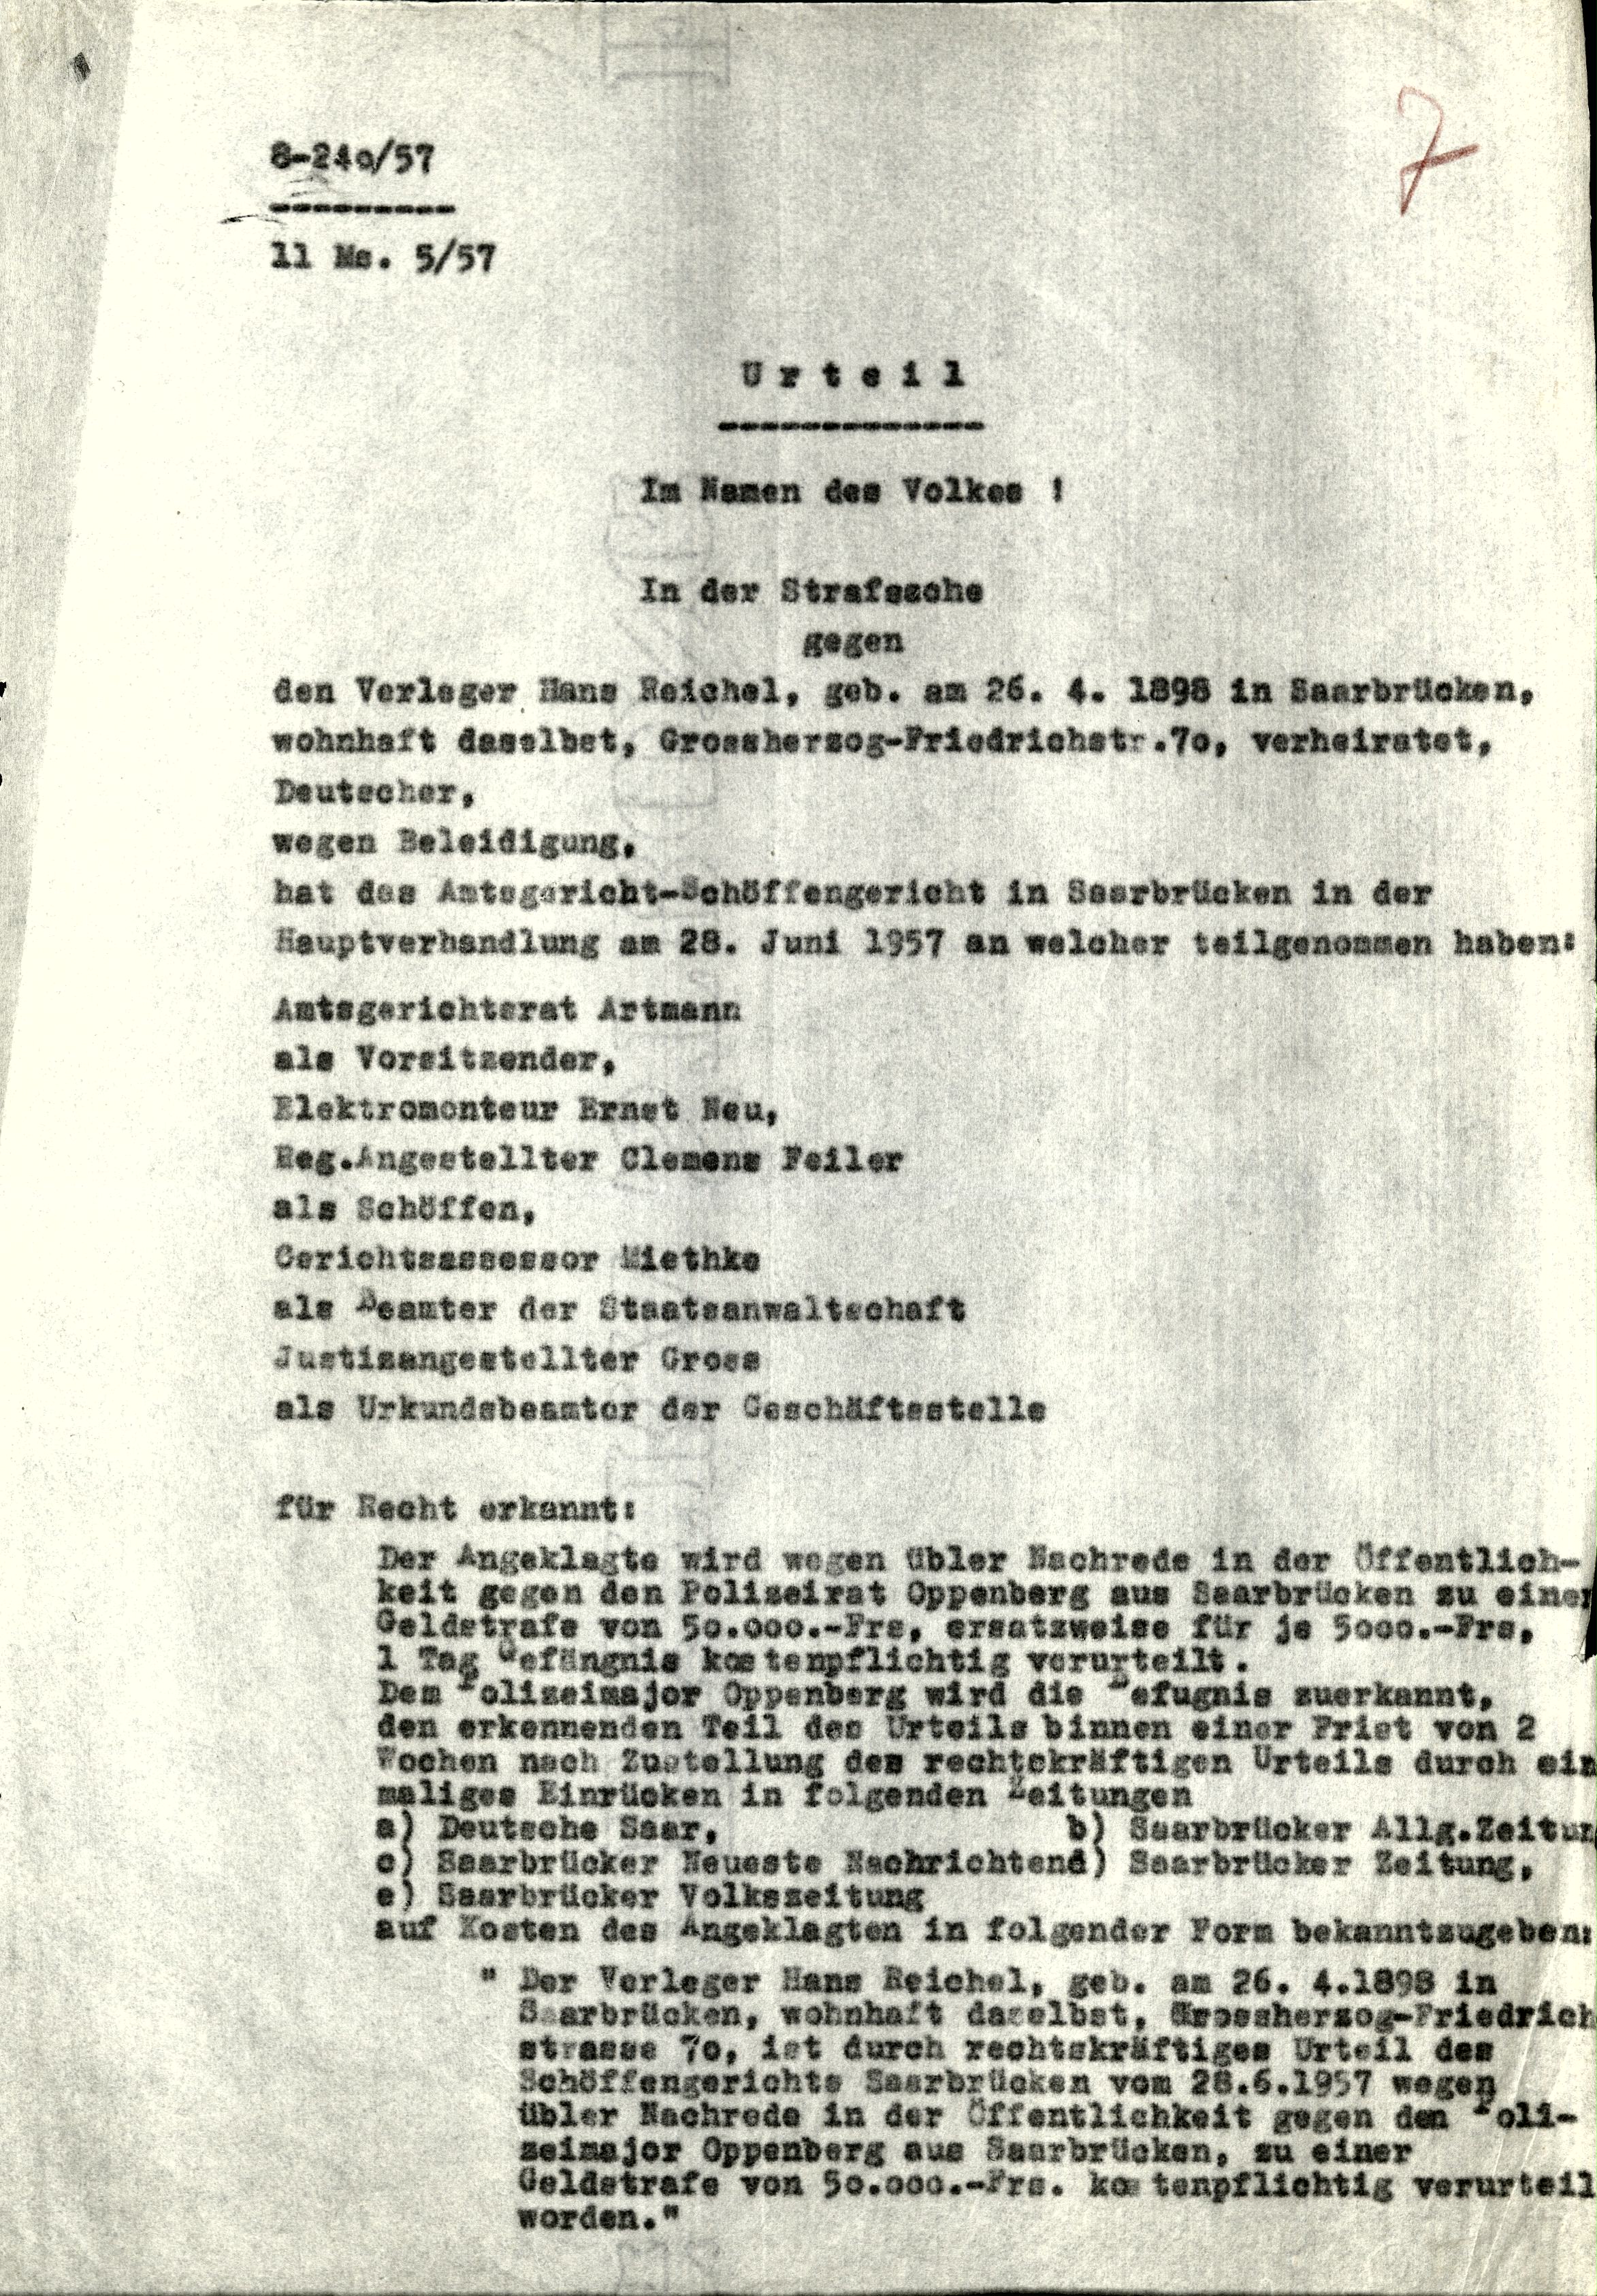 Urteil und Urteilsgründe des Amtsgericht-Schöffengericht in Saarbrücken vom 28. Juni 1957 gegen Hans Reichel wegen Beleidigung.